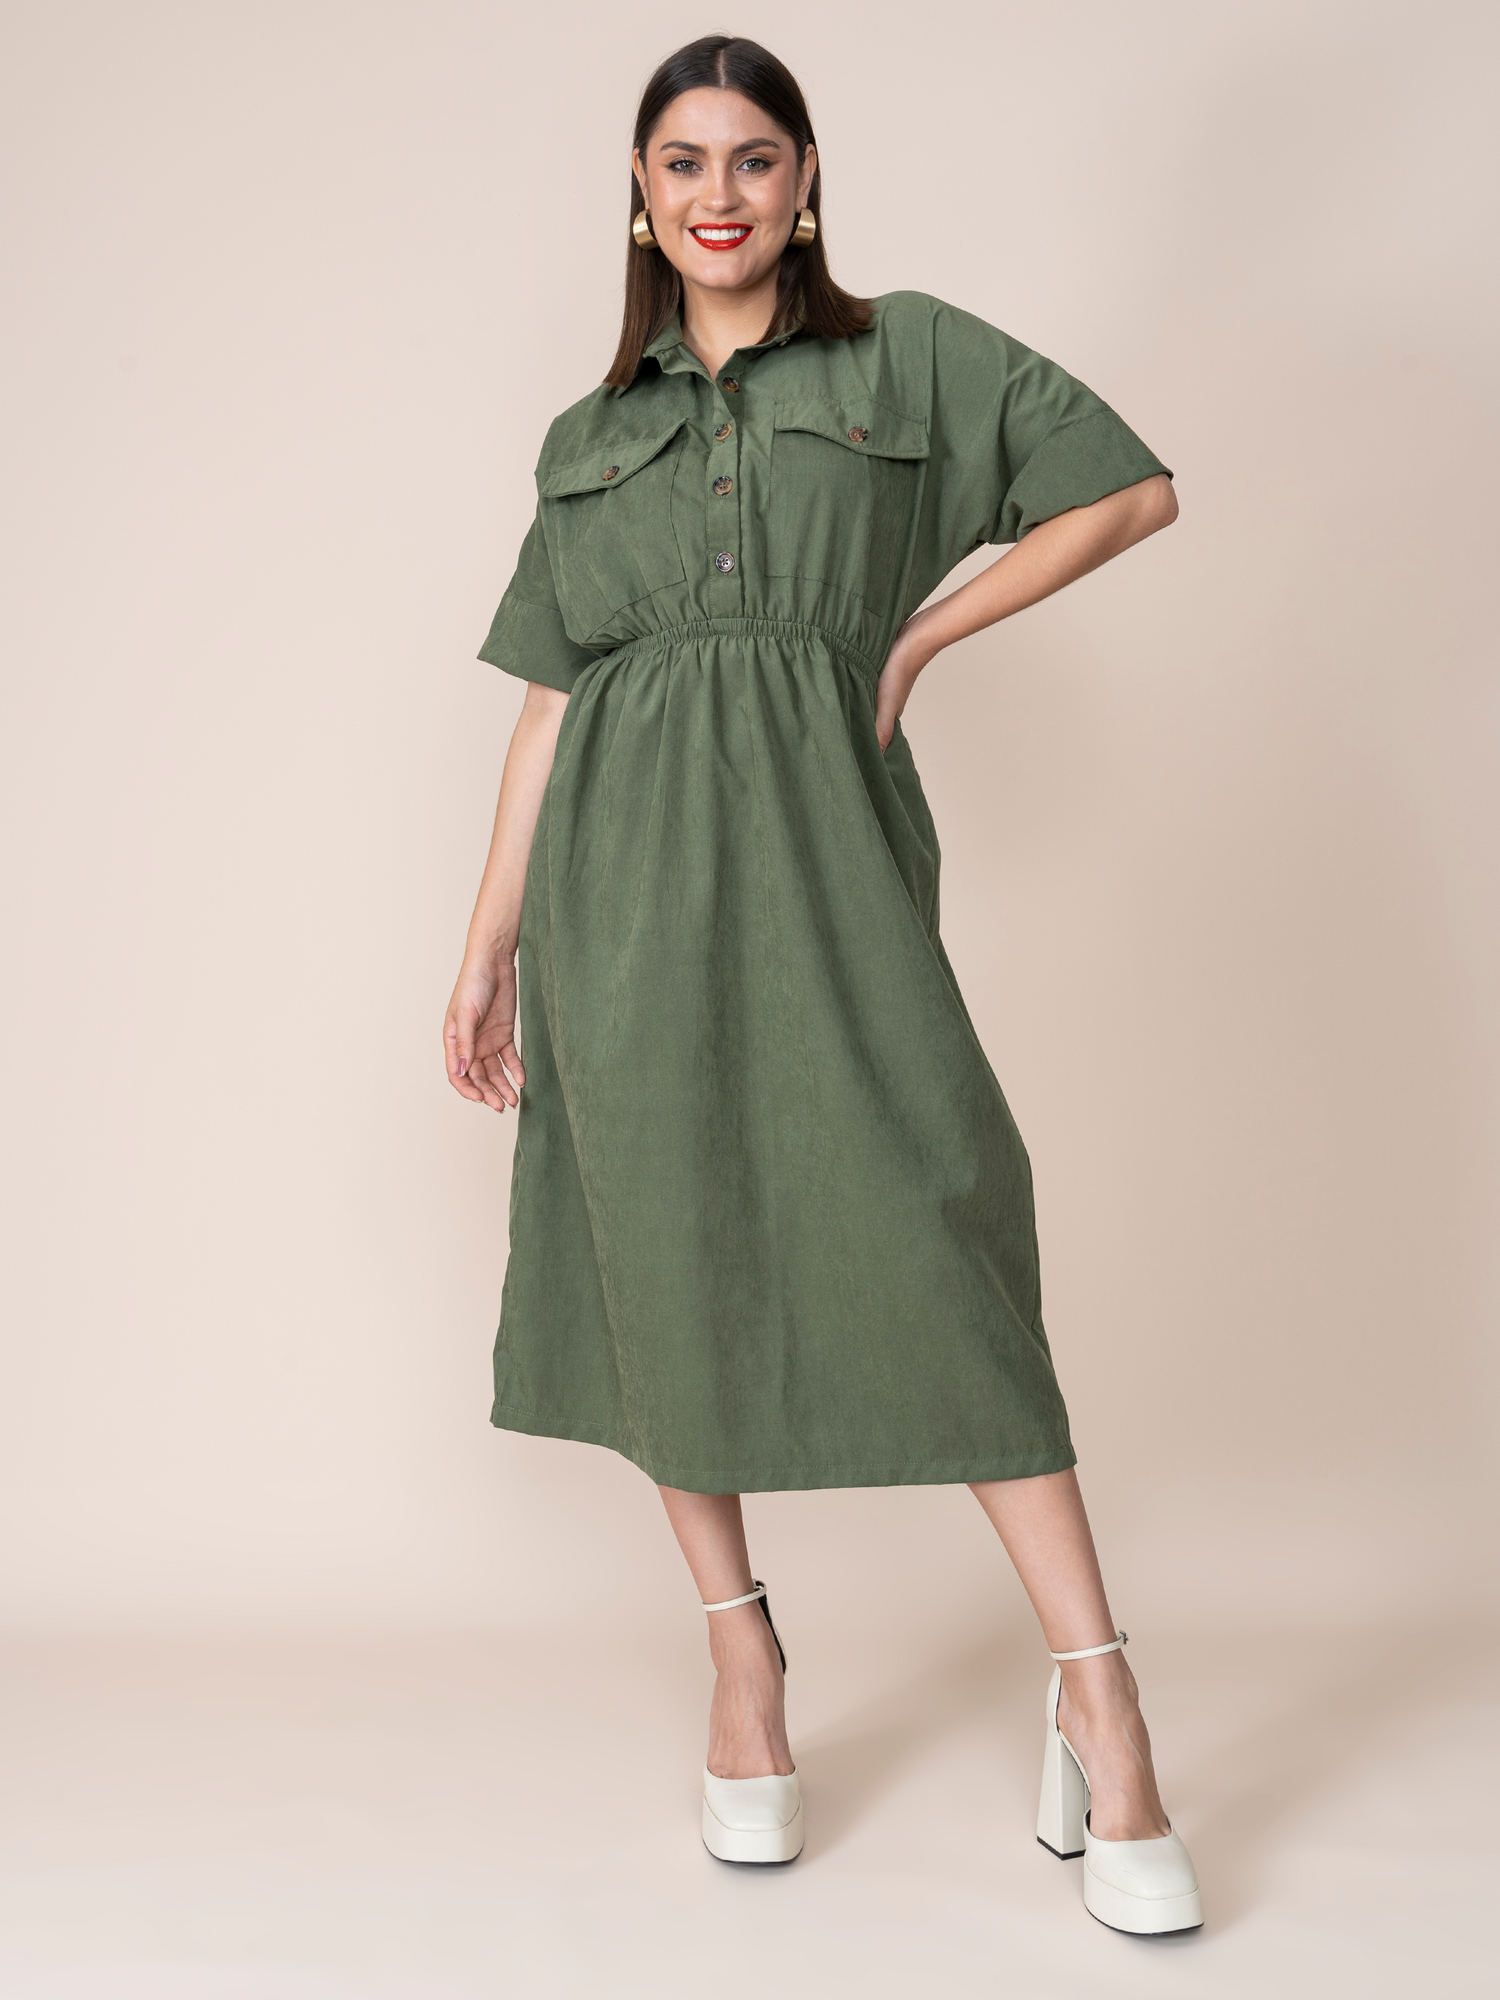 Lira Green Dress